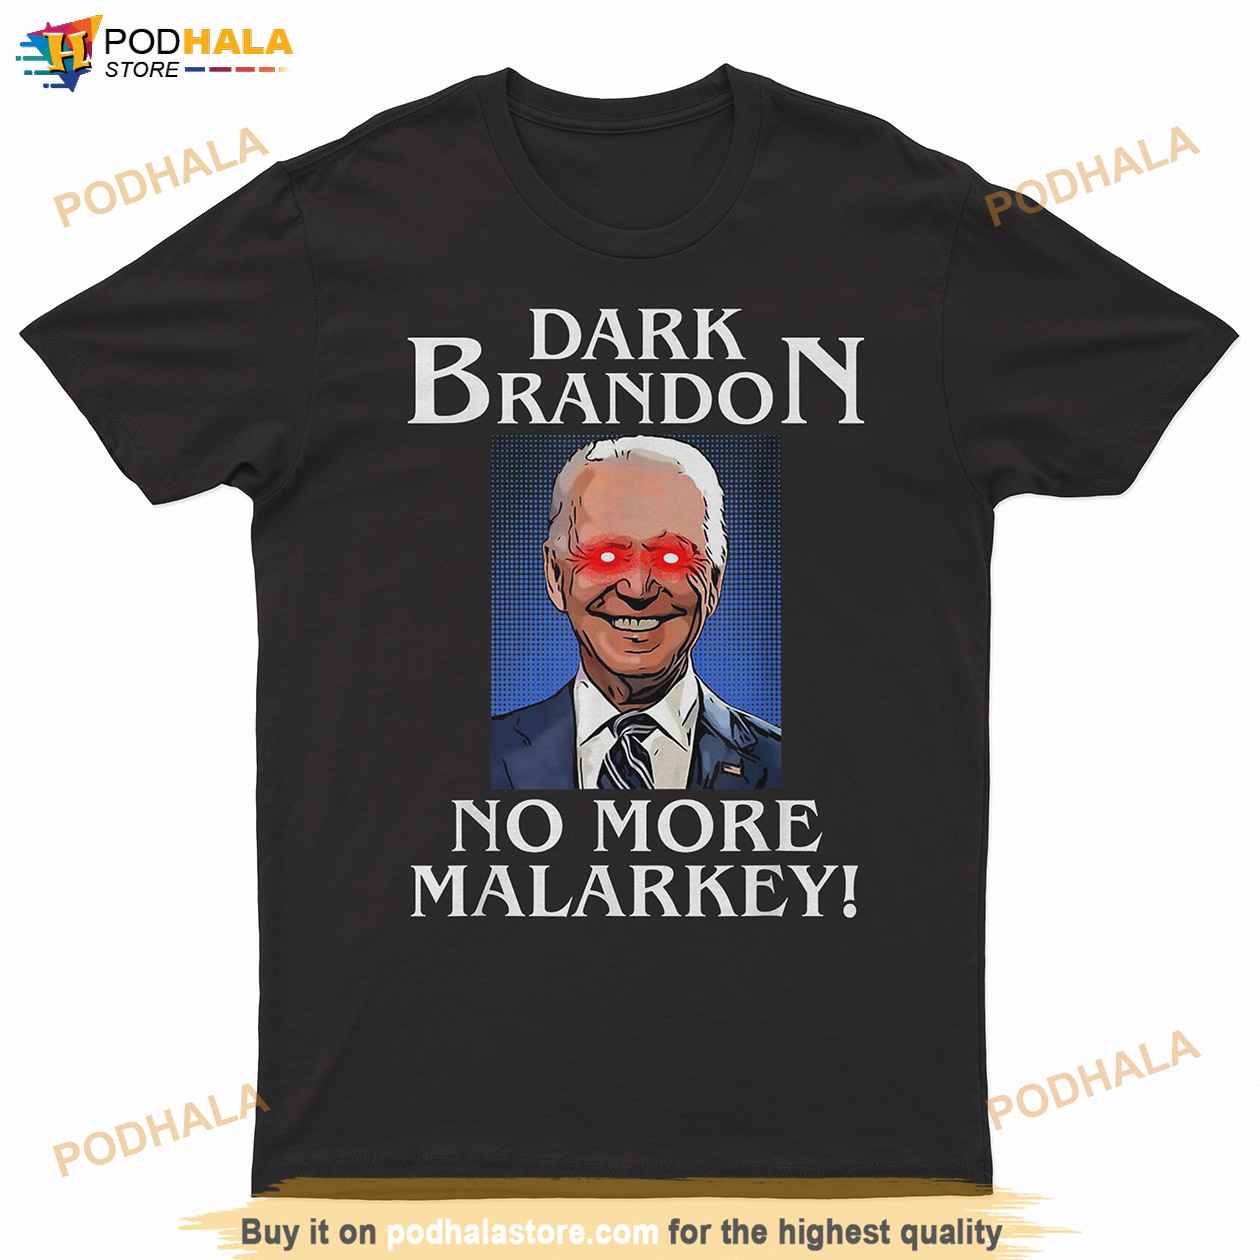 Dark Brandon Shirt, Joe Biden Funny Political Liberal Meme Tee